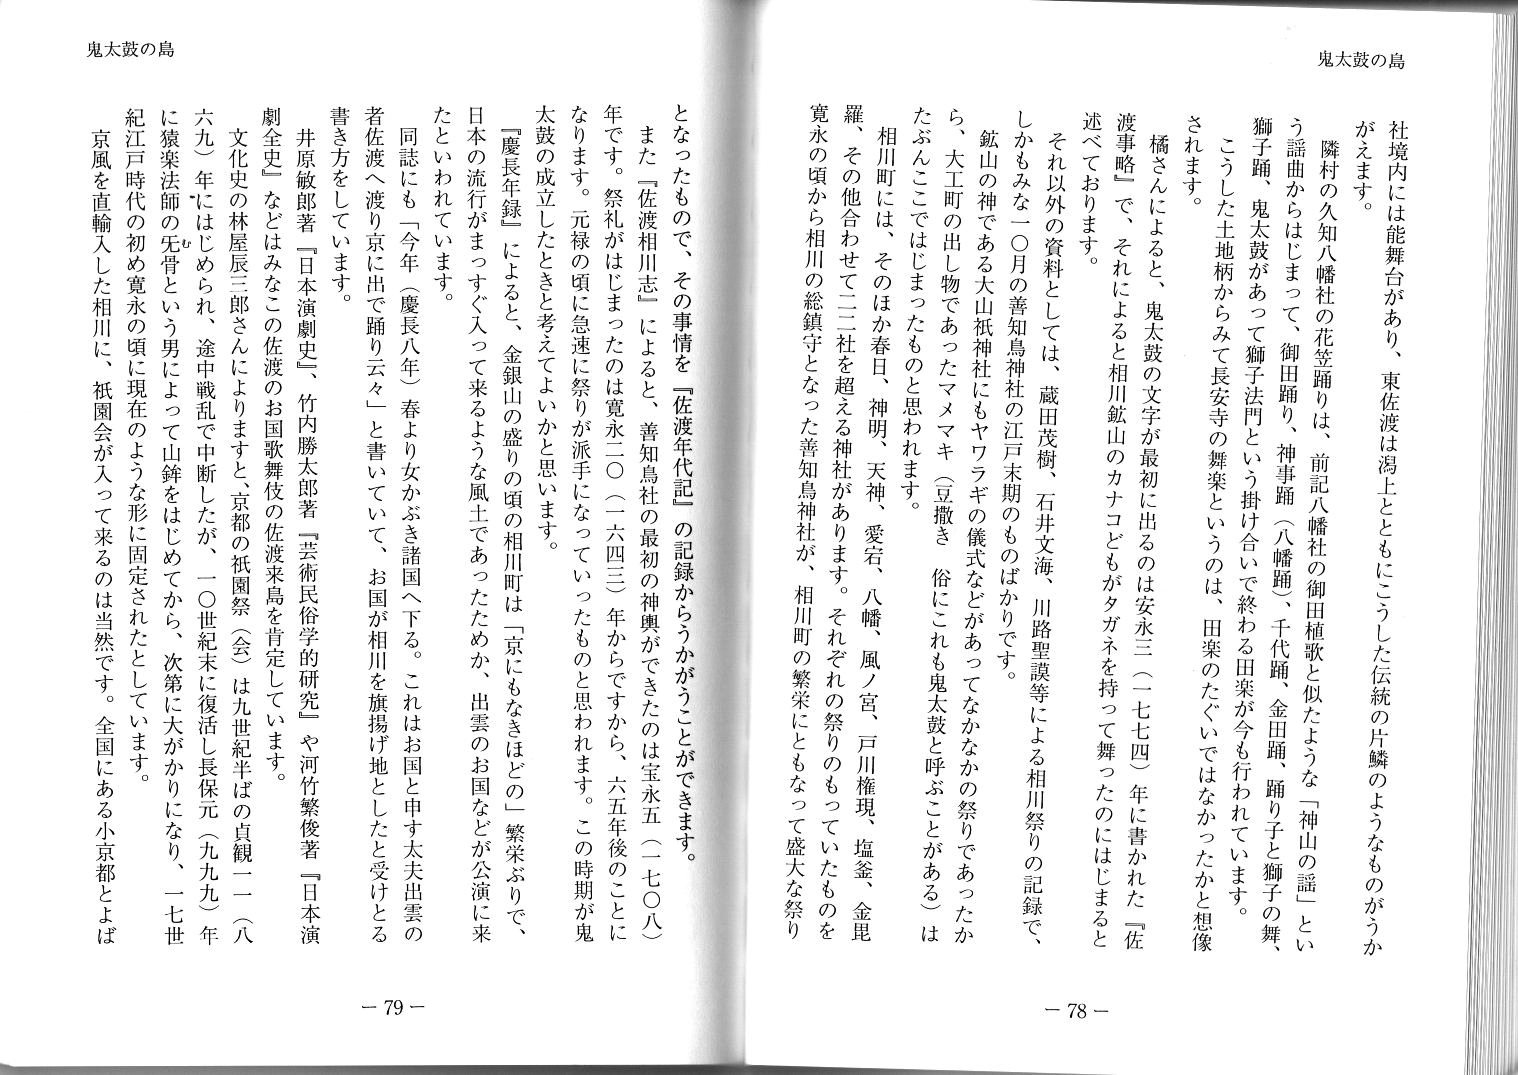 たち橘法老日本海文化研究所報告 第一集 令和元年7月 (2)